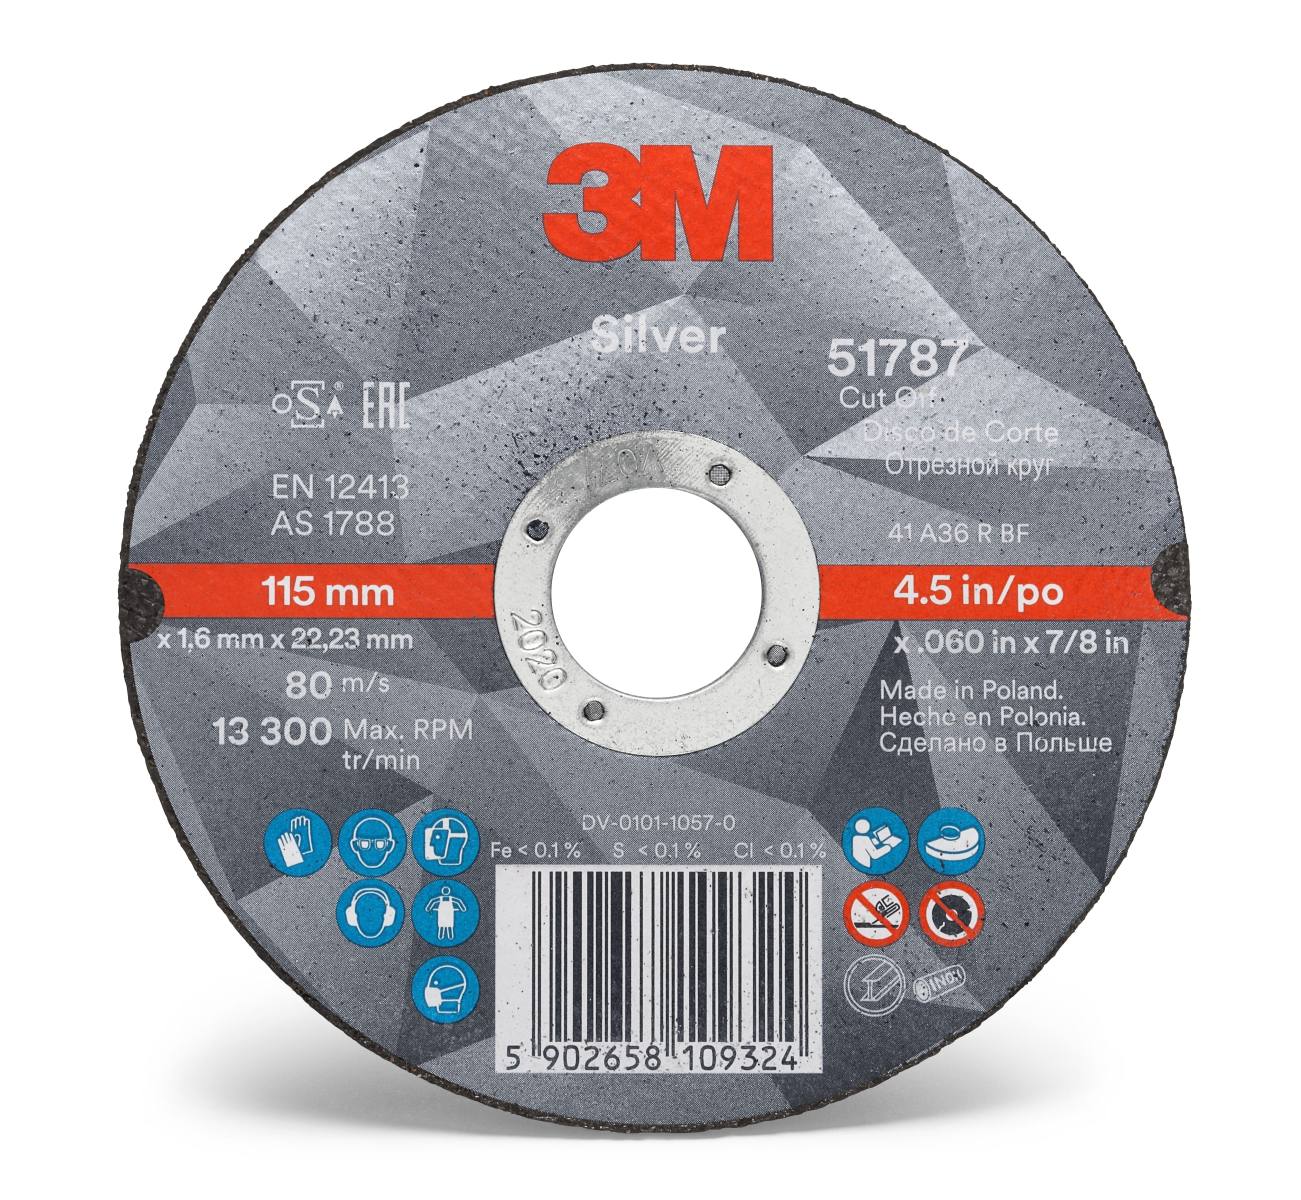 3M Silver Cut-Off Wheel cutting-off wheel, 125 mm, 2.5 mm, 22.23 mm, T42, 51801